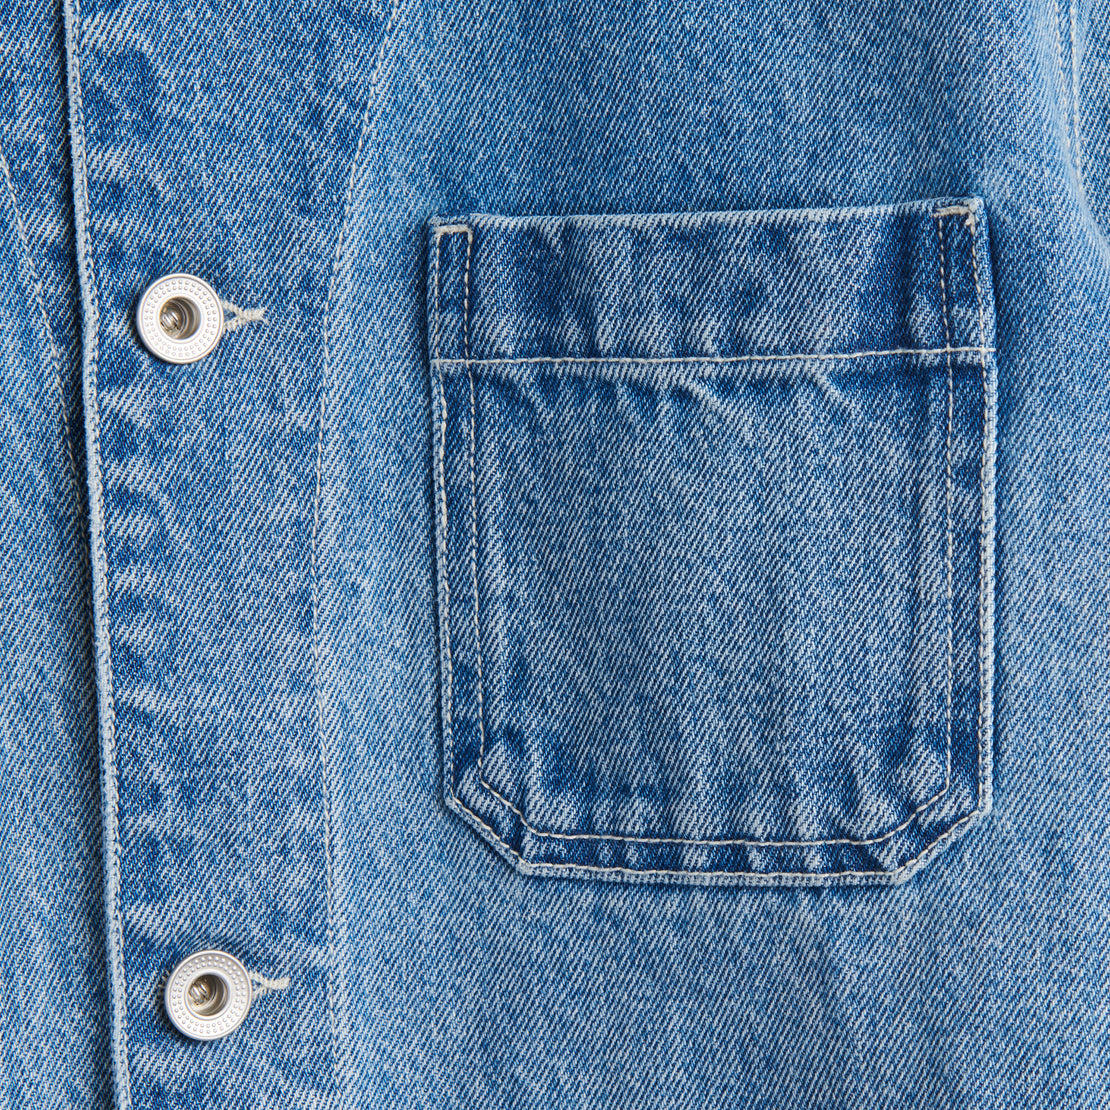 Britt Work Jacket - Vintage Wash Denim - Alex Mill - STAG Provisions - W - Outerwear - Coat/Jacket